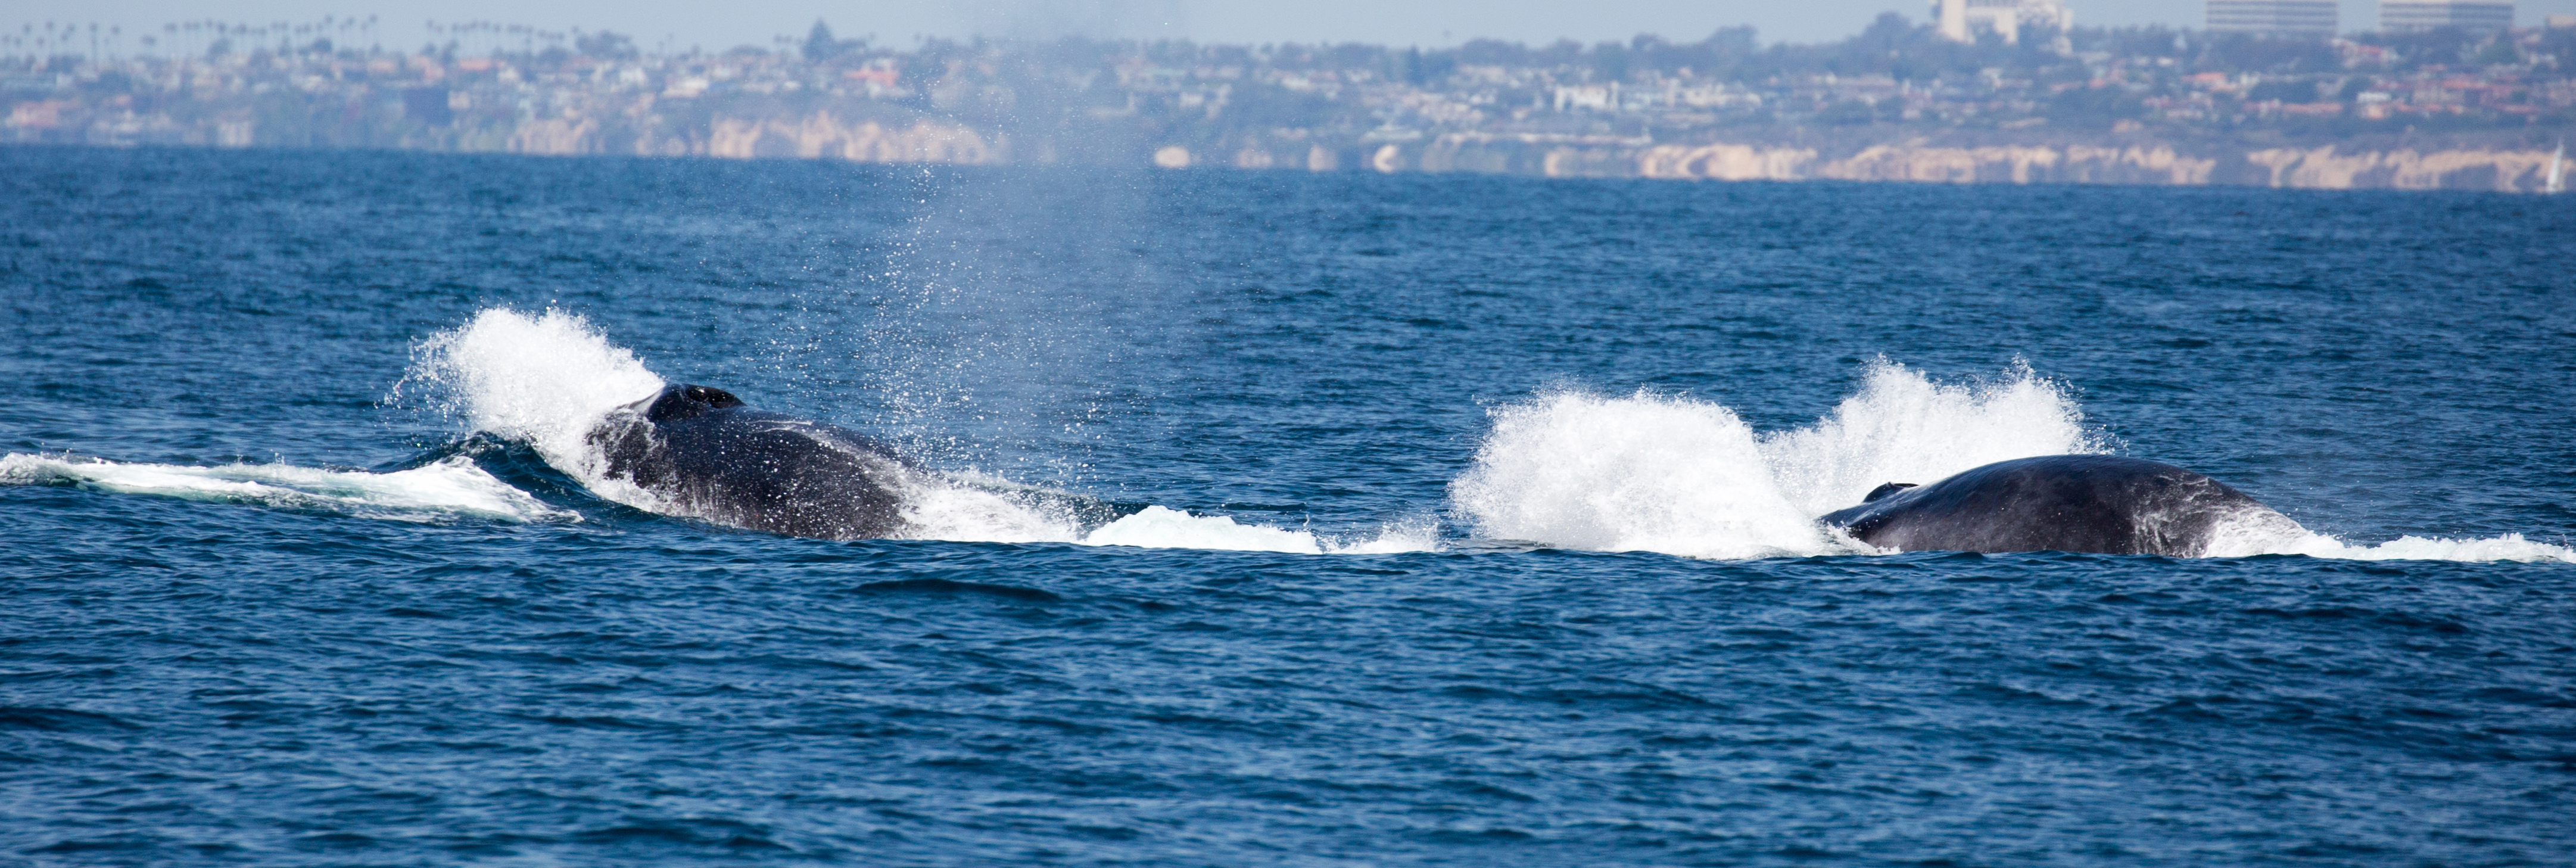 finback-whale-watching-long-beach-tours